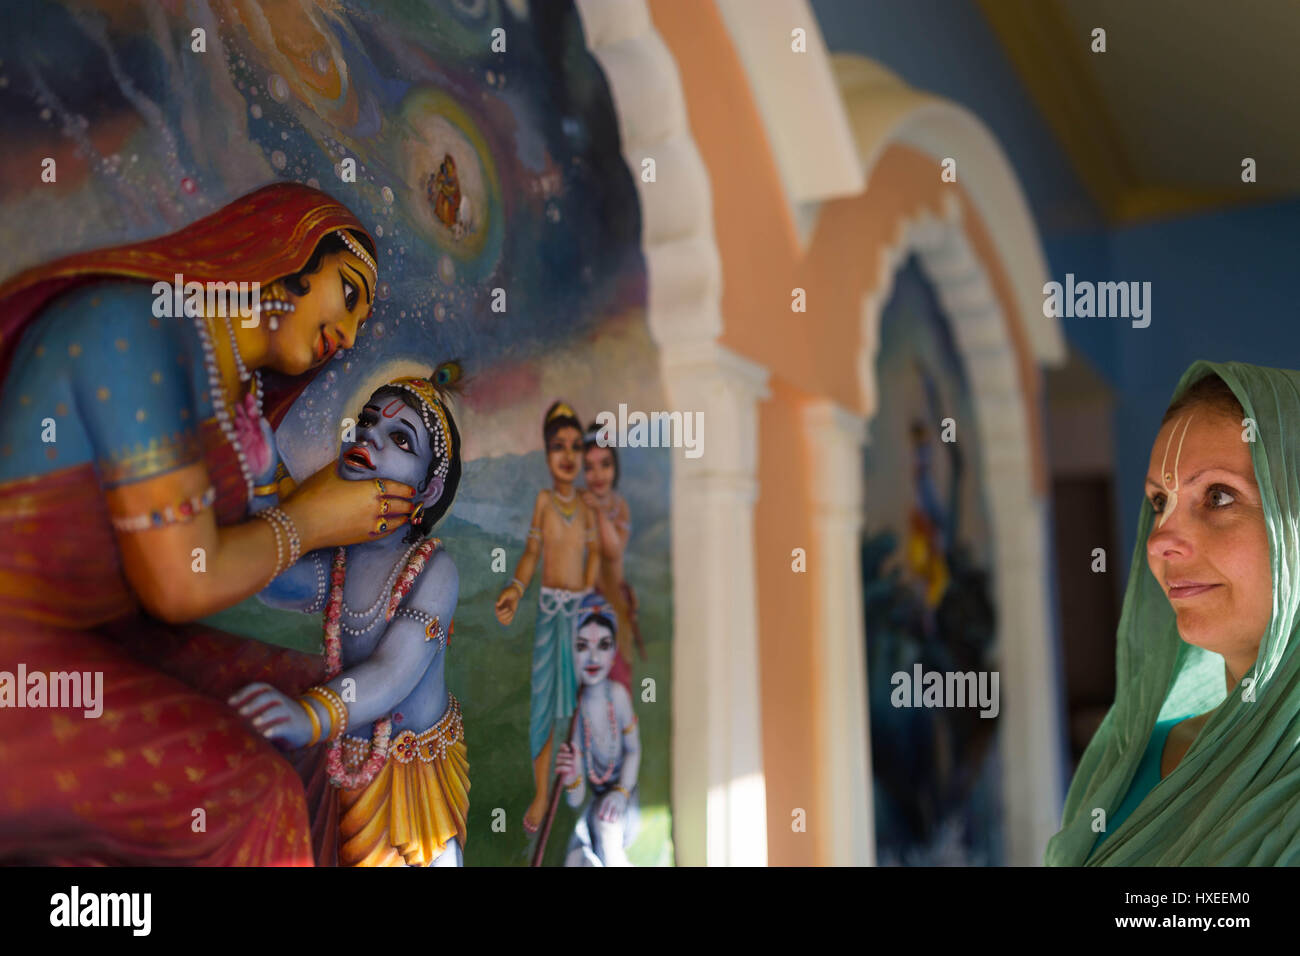 Krishna devotee woman with murals in Krishna Valley, Hungary Stock Photo